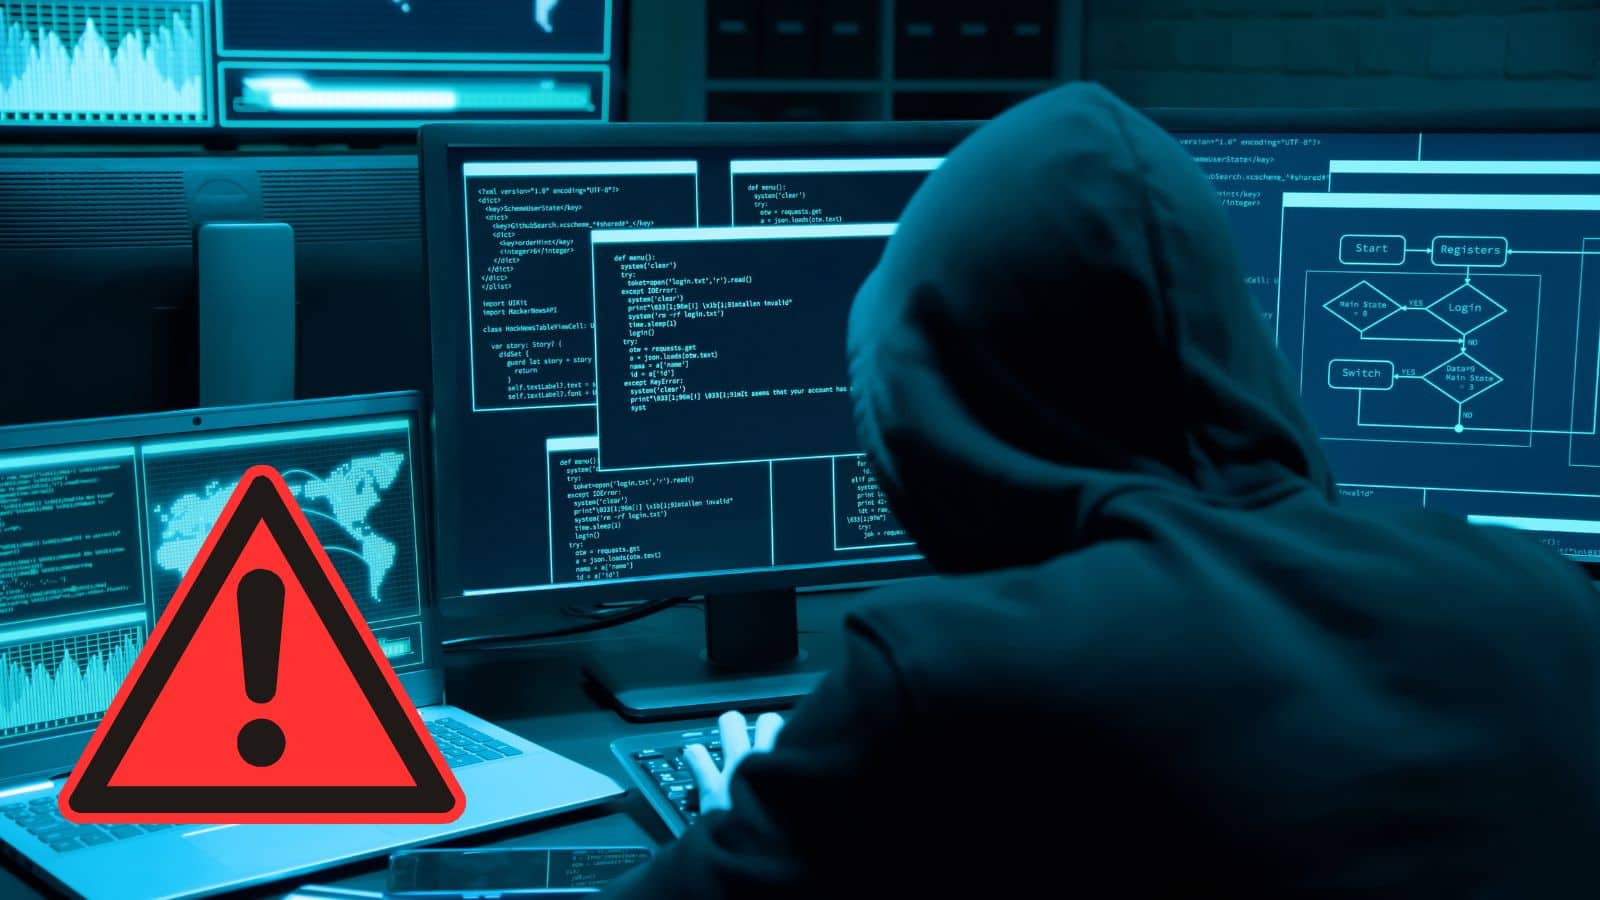 Tre hacker arrestati in Ucraina per furto di identità digitali 